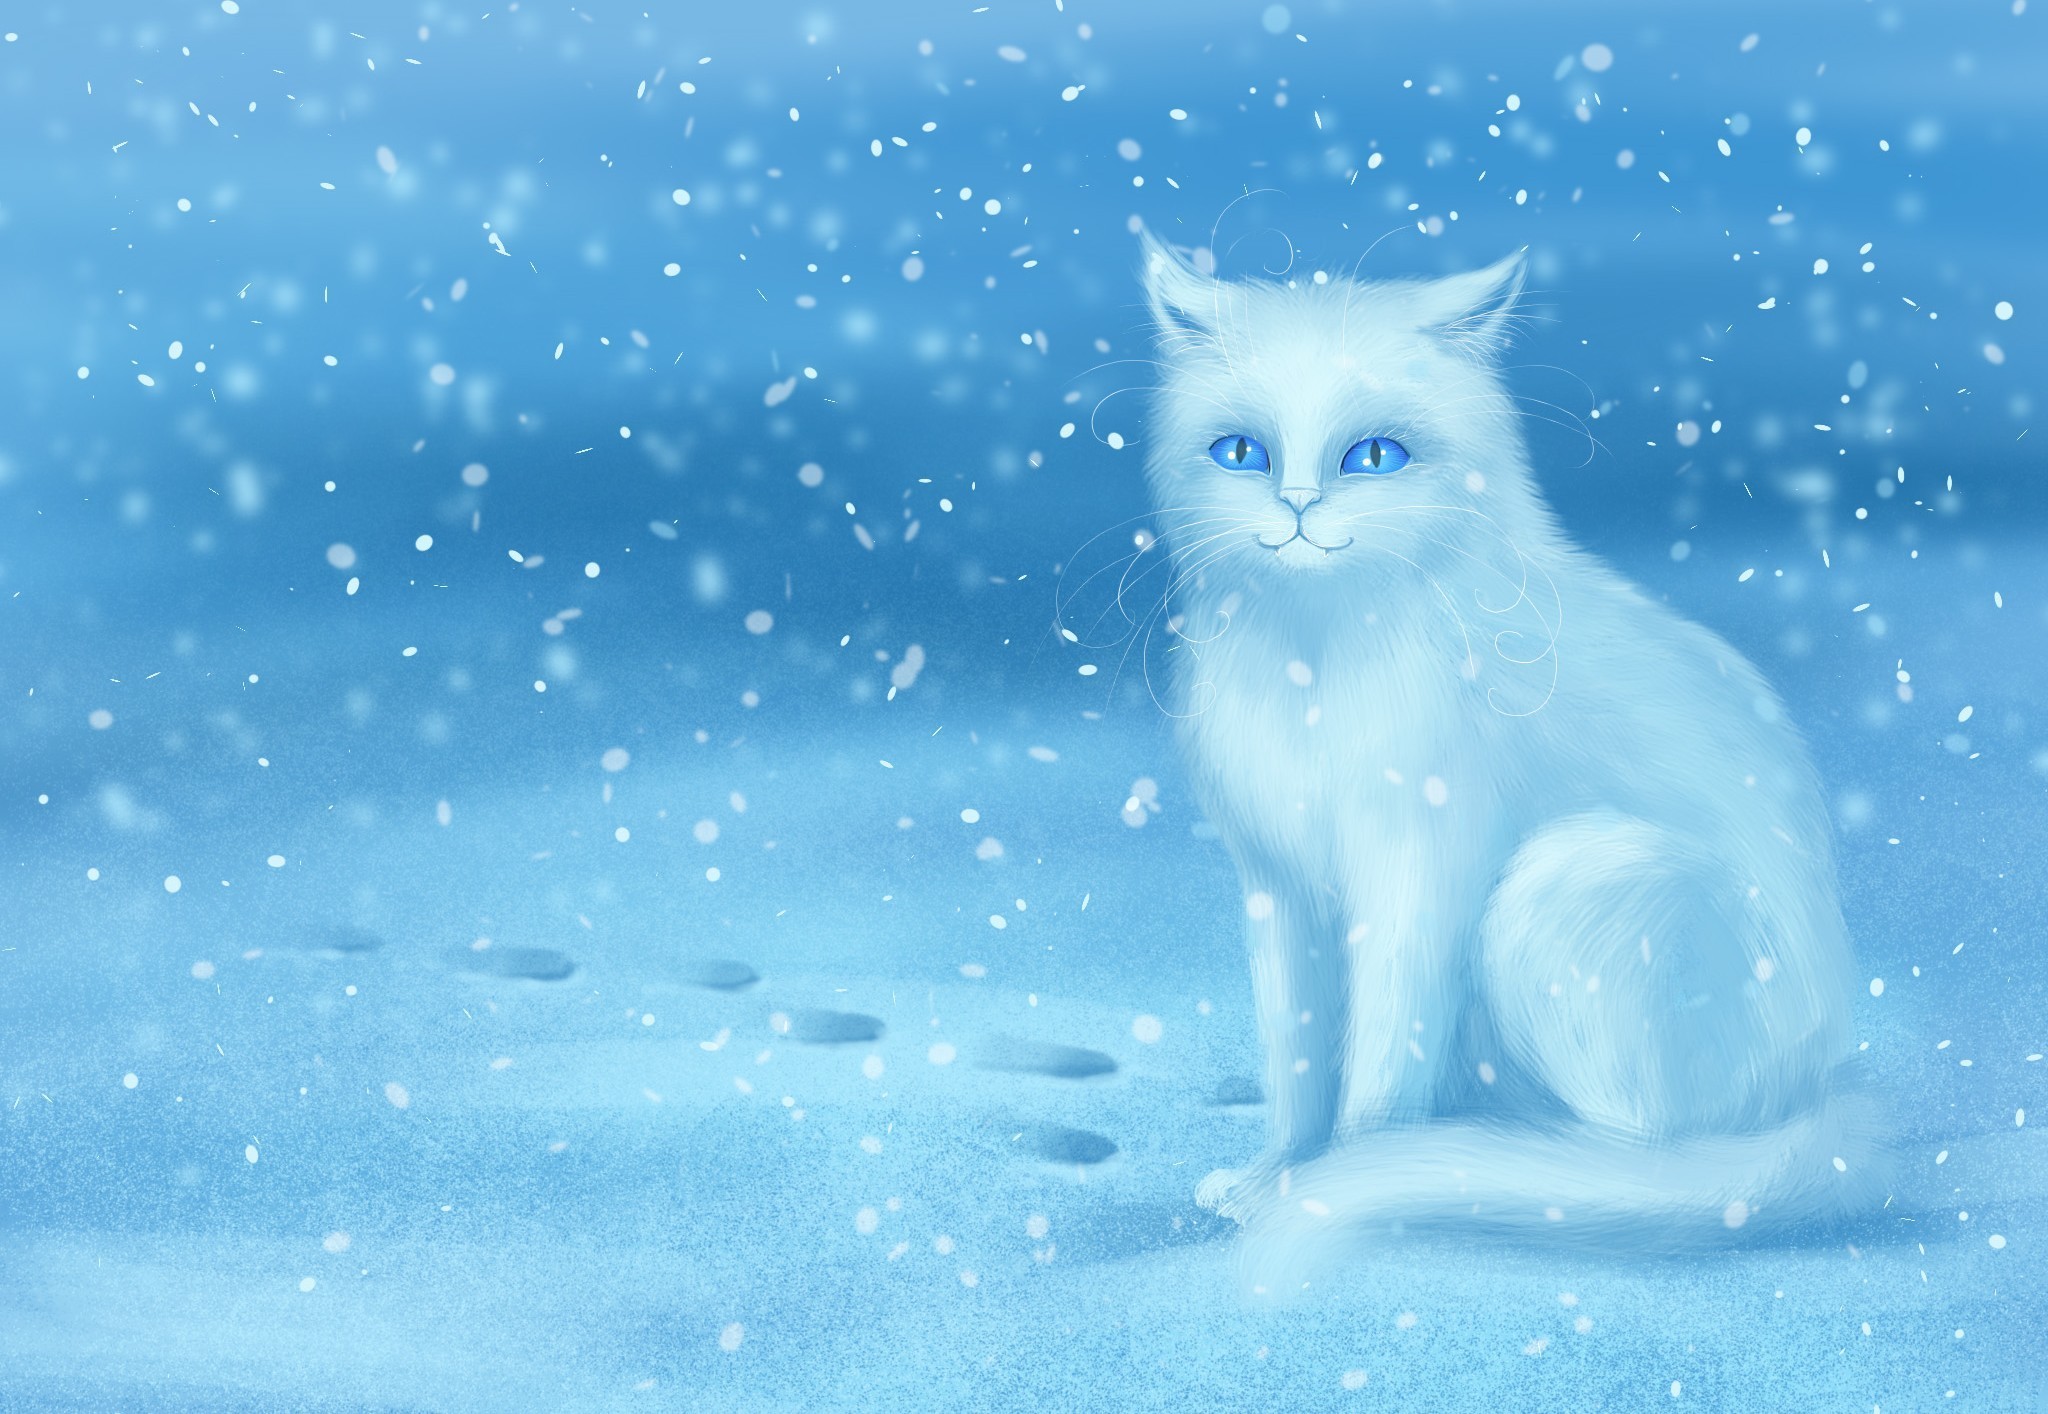 Фото кошка Снежинки Снег сидящие животное Рисованные 2048x1414 кот коты Кошки снежинка снега снегу снеге сидя Сидит Животные